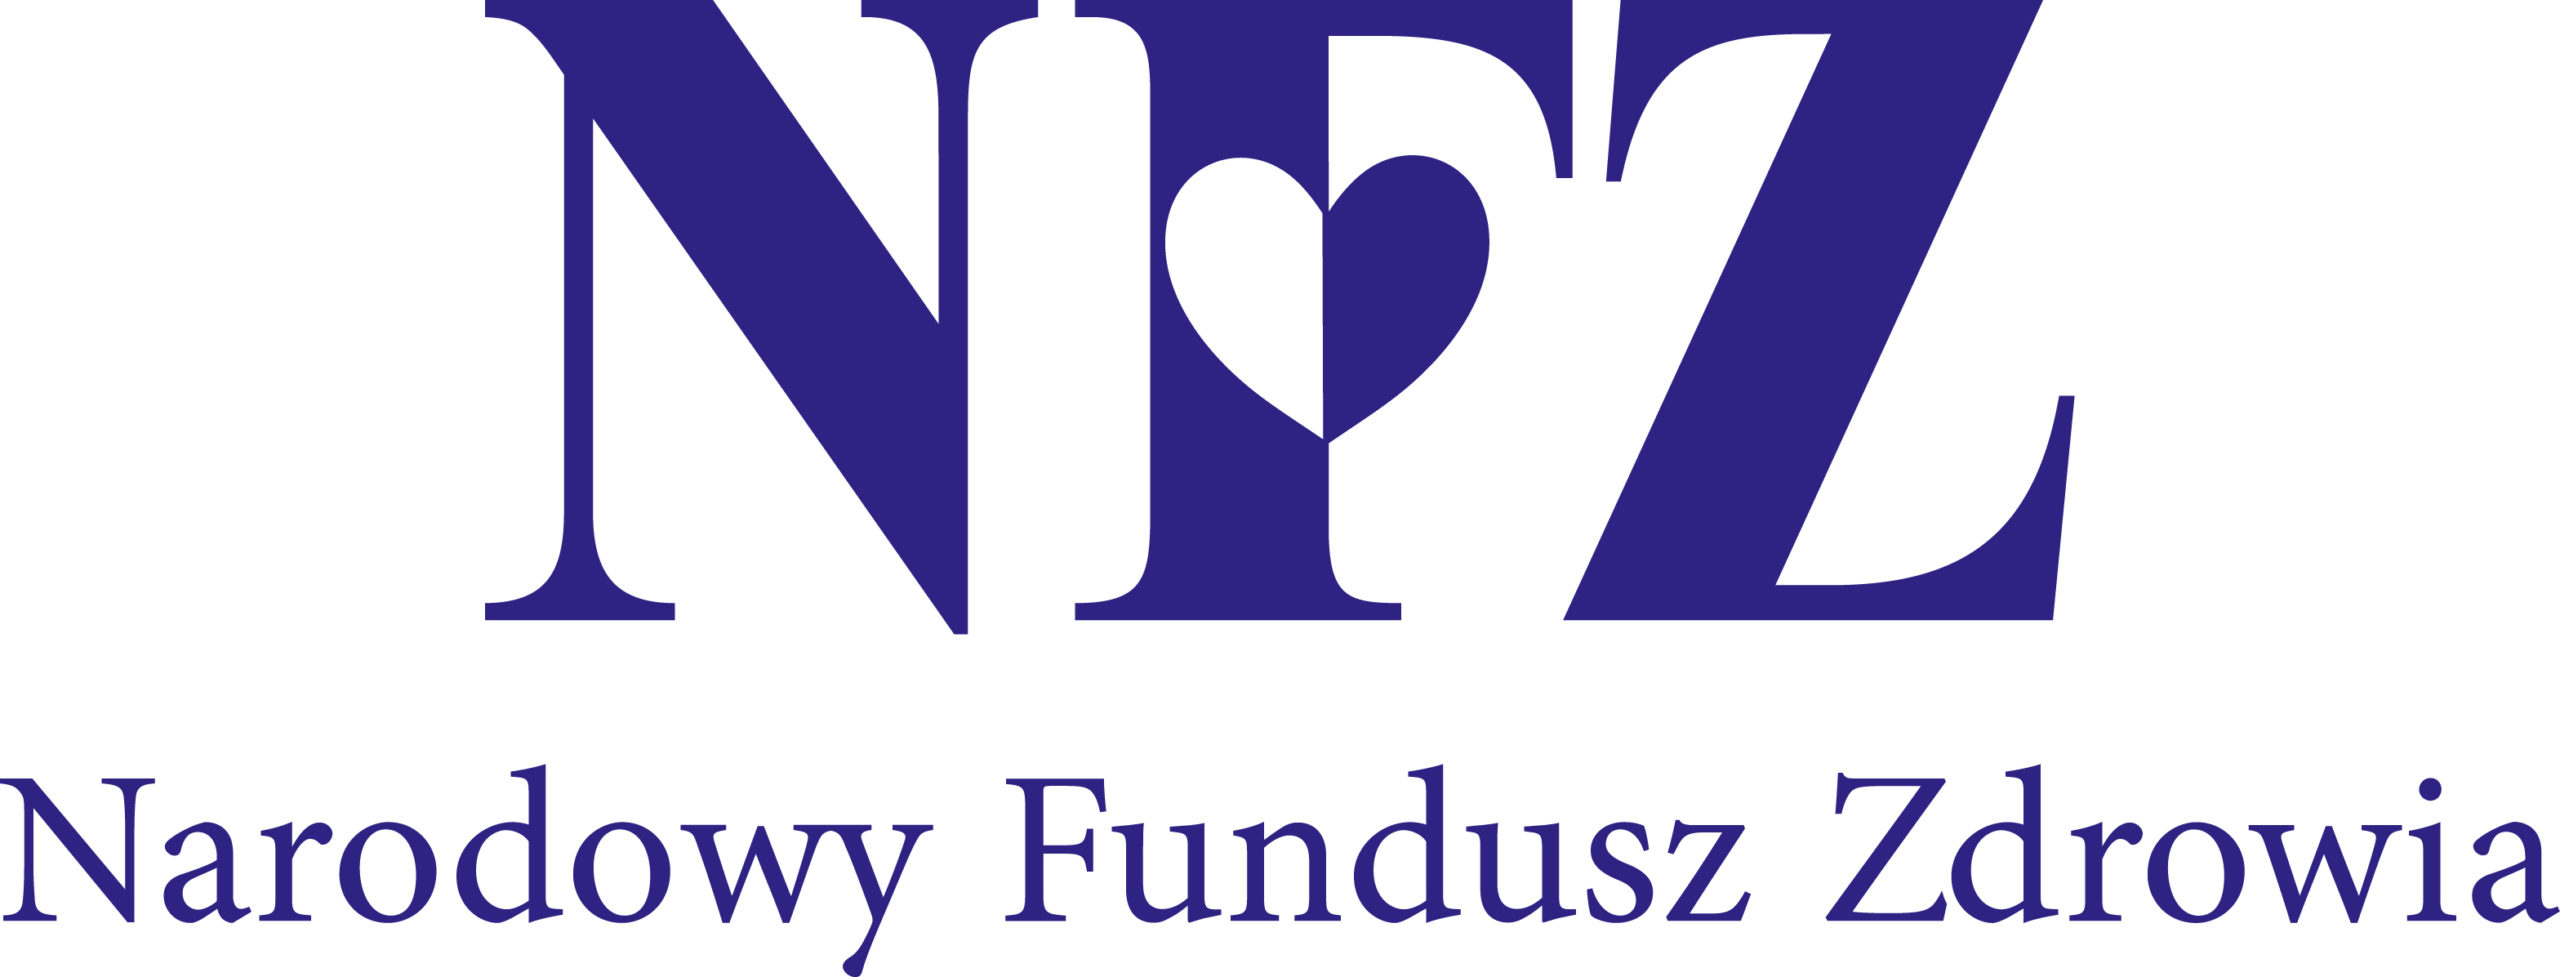 logo Narodowego Funduszu Zdrowia duże niebieskie litery NFZ a pod spodem pełna nazwa